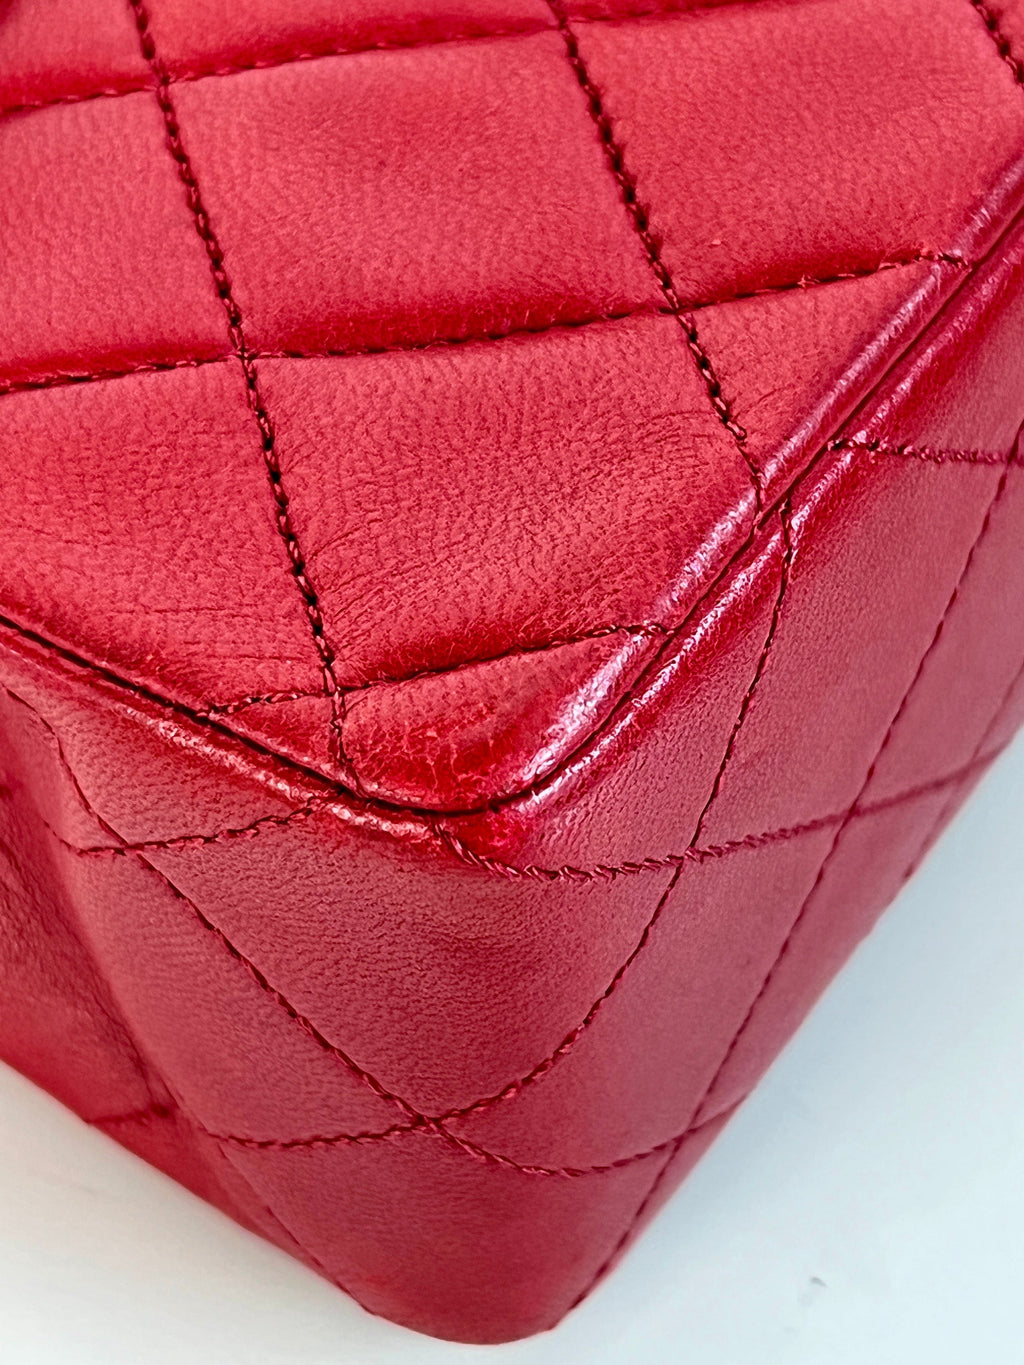 Chanel Red Crocodile Vintage CC Classic Mini Square Bag – The Closet